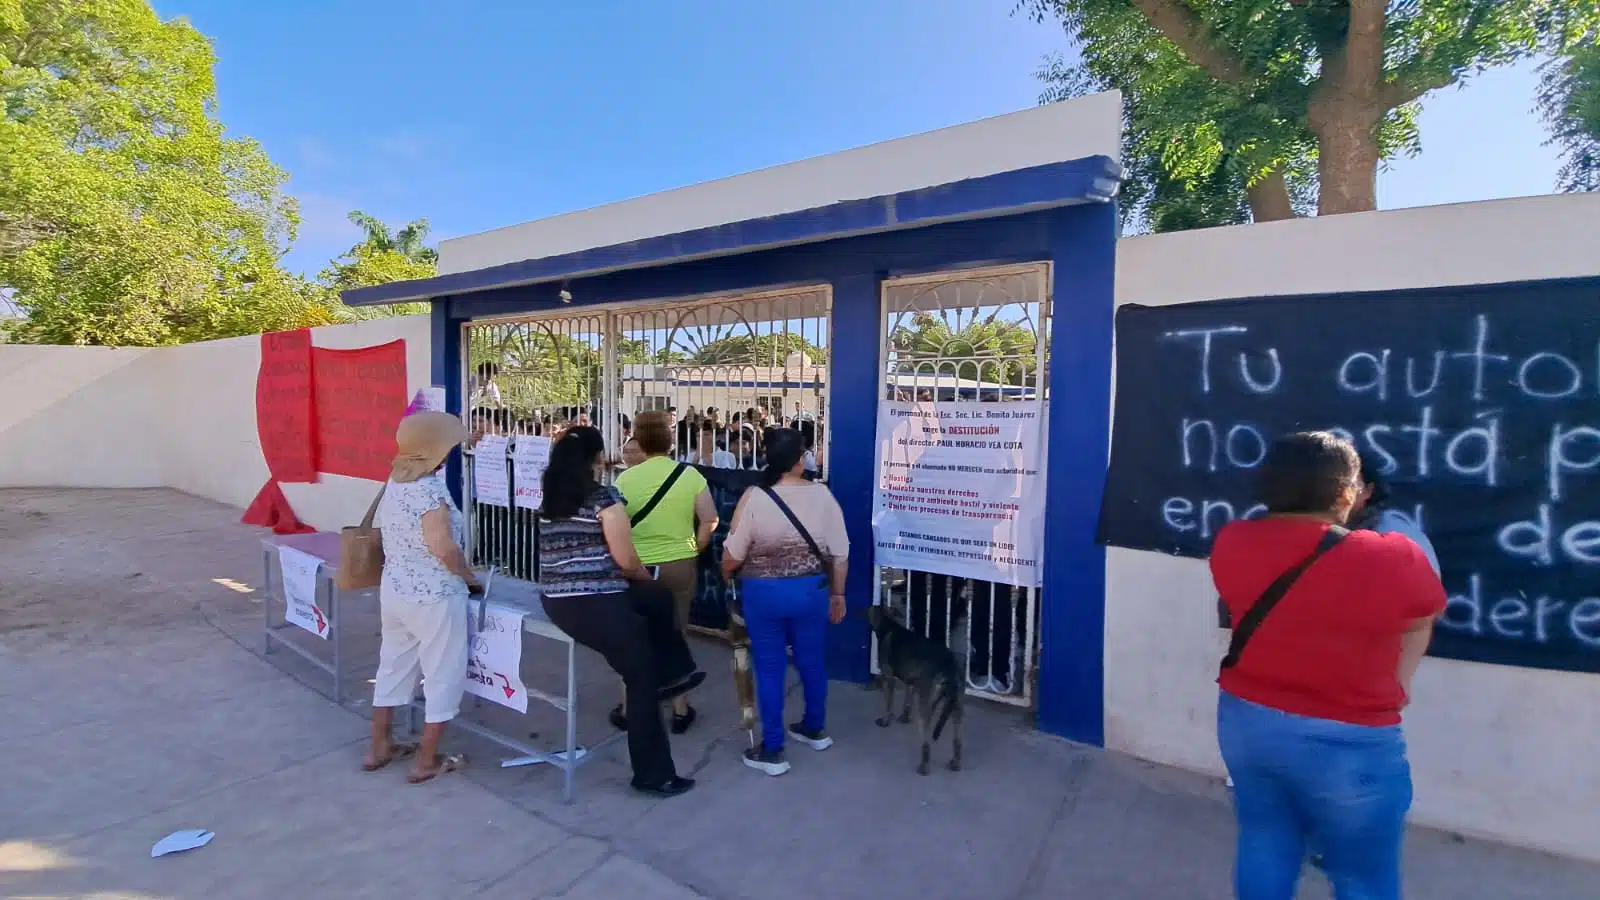 toman escuela Secundaria “Benito Juárez”de Batamote en Guasave y piden destituir al director